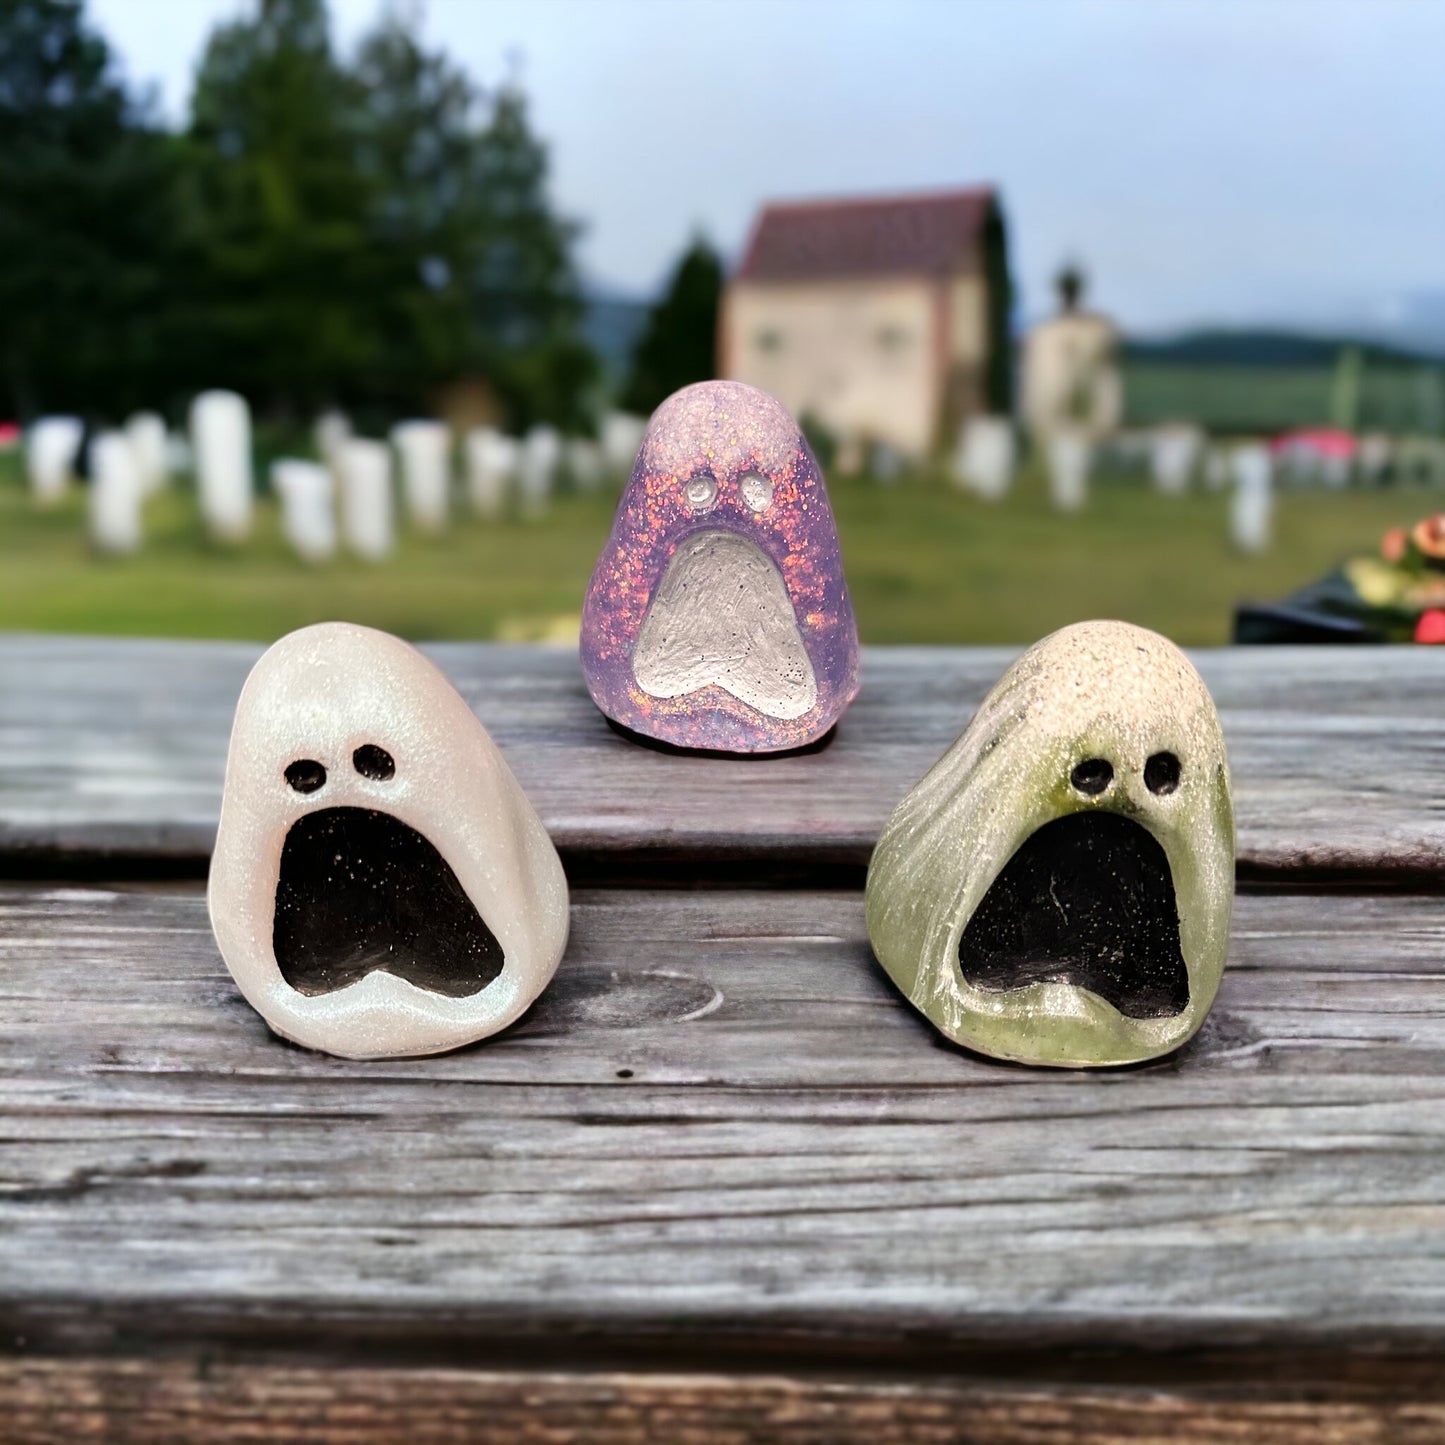 Moaning Ghost Figurine - 3 Varieties